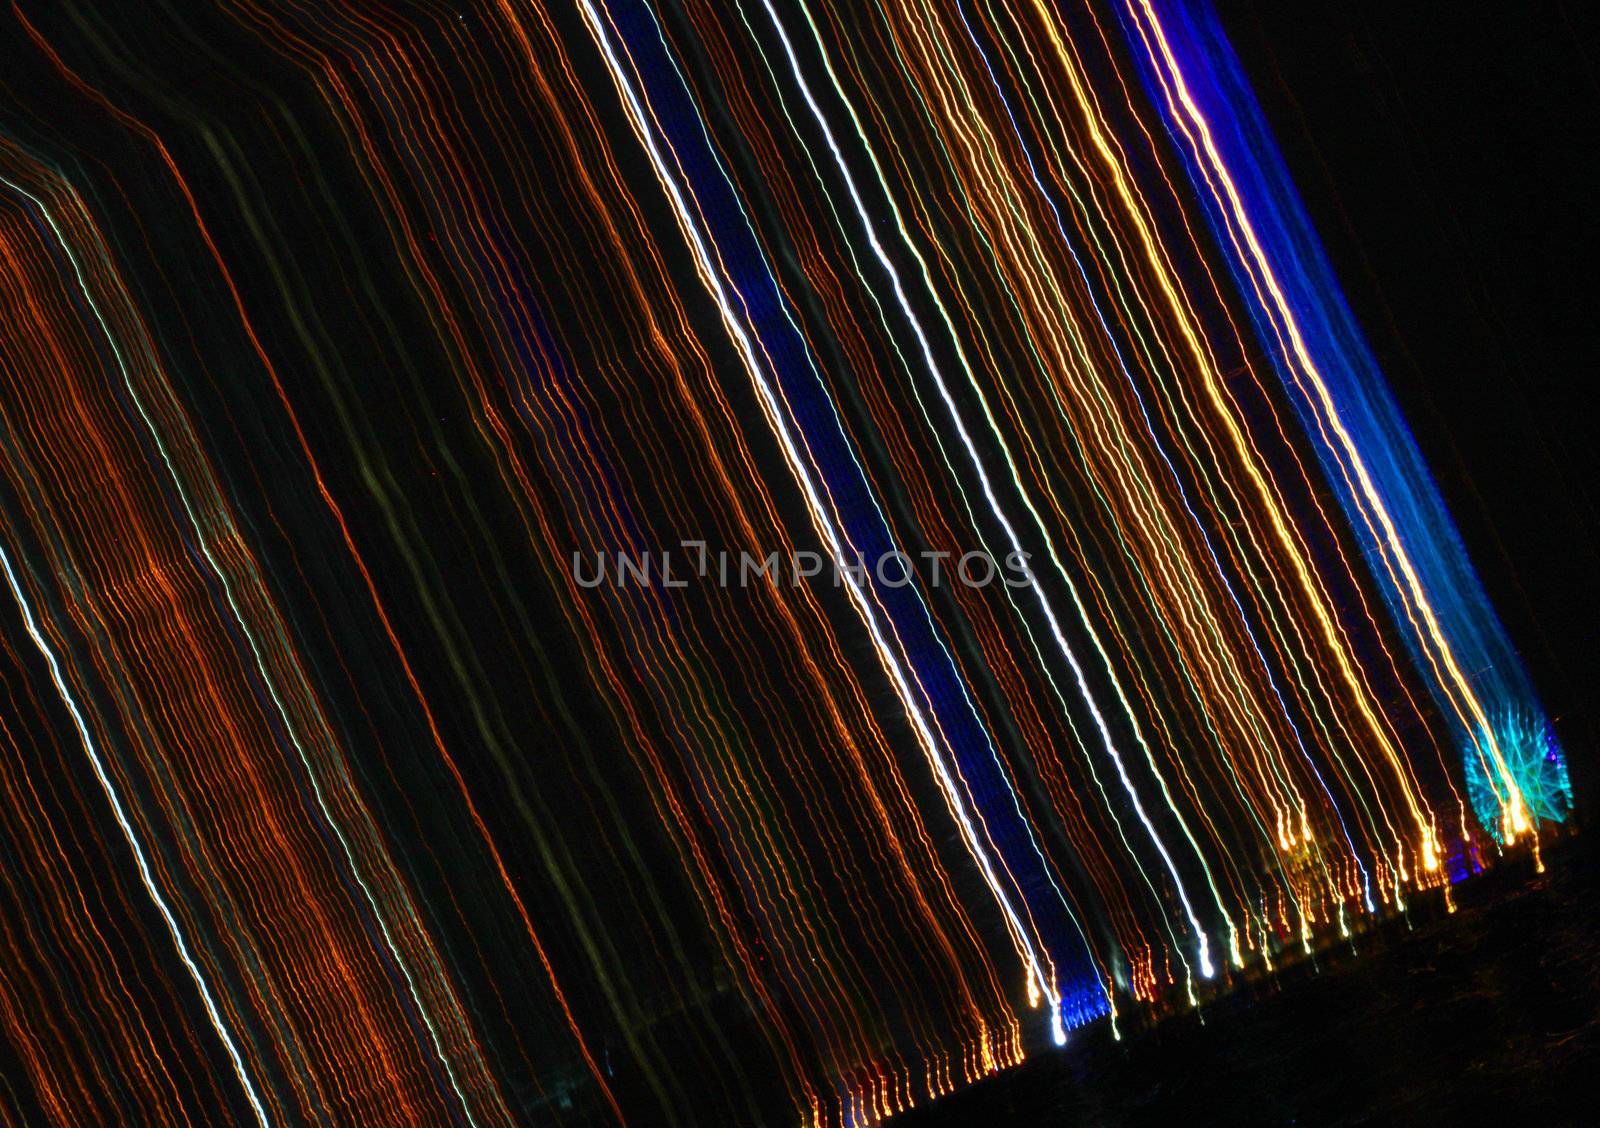 Thread of Lights by ferdie2551